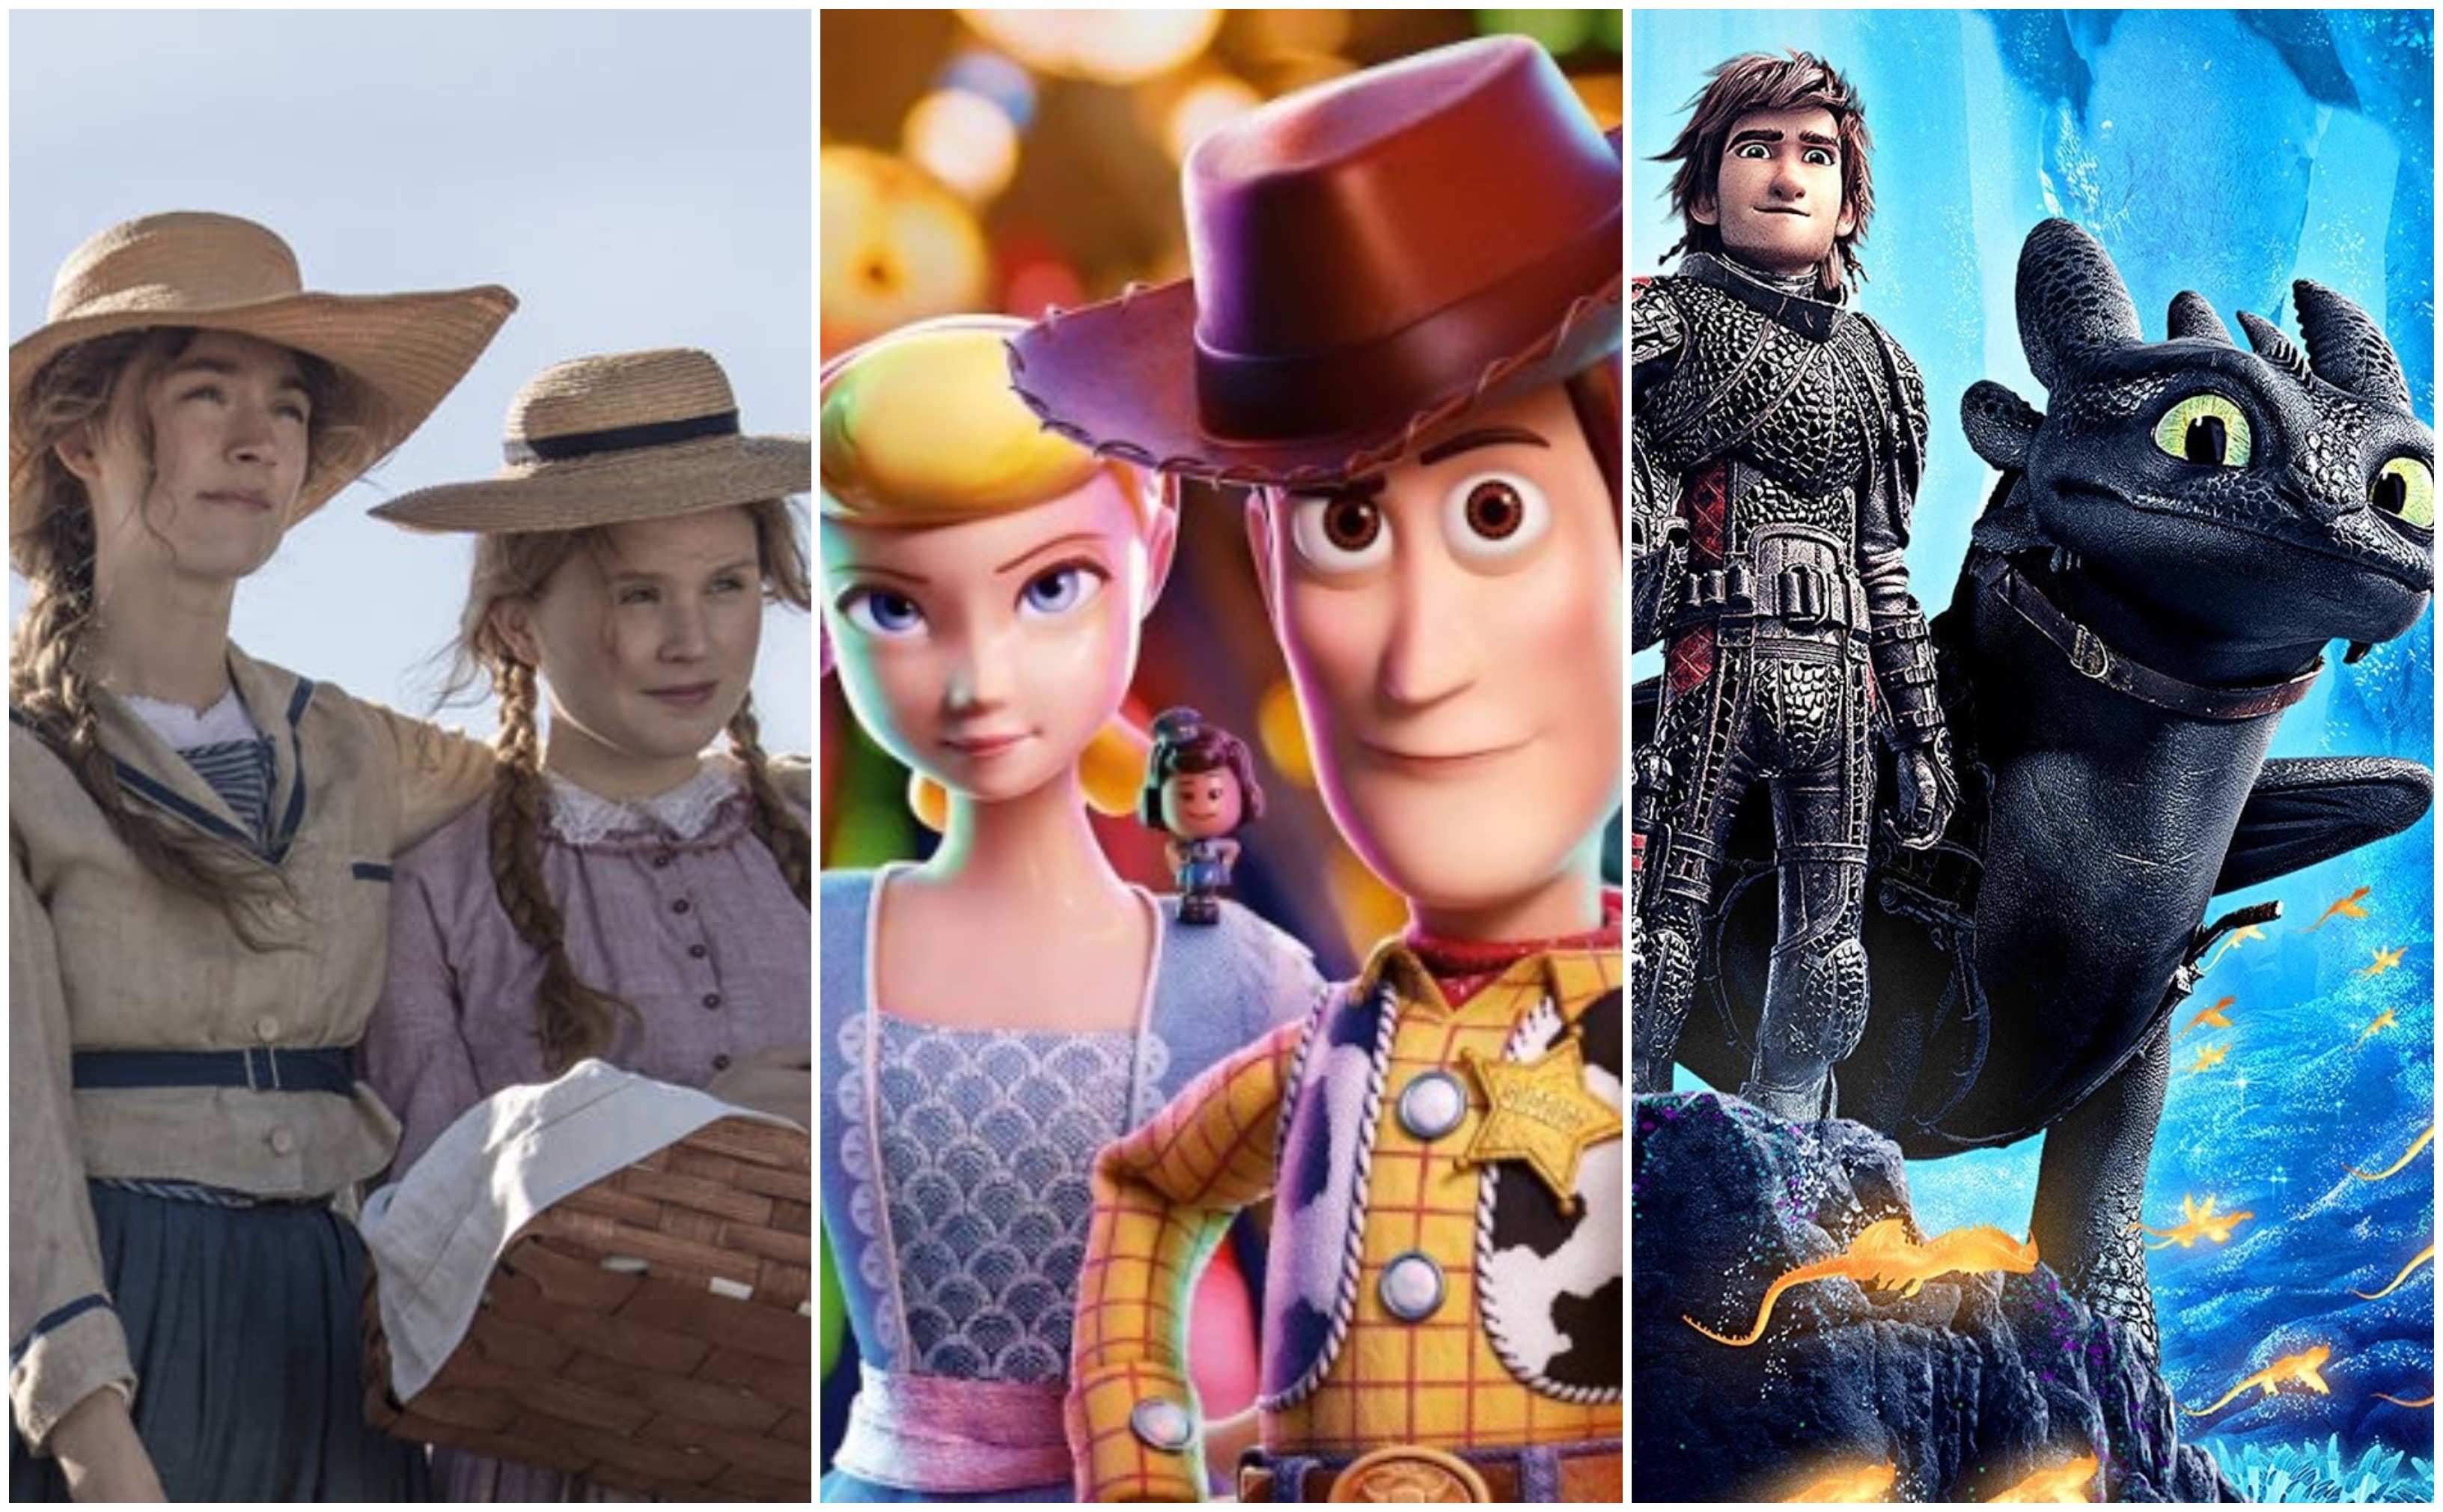 Adoráveis Mulheres, Toy Story 4 e Como Treinar seu Dragão 3 são alguns dos longas-metragens que podem ser apreciados por todas as idades (Foto: Divulgação)